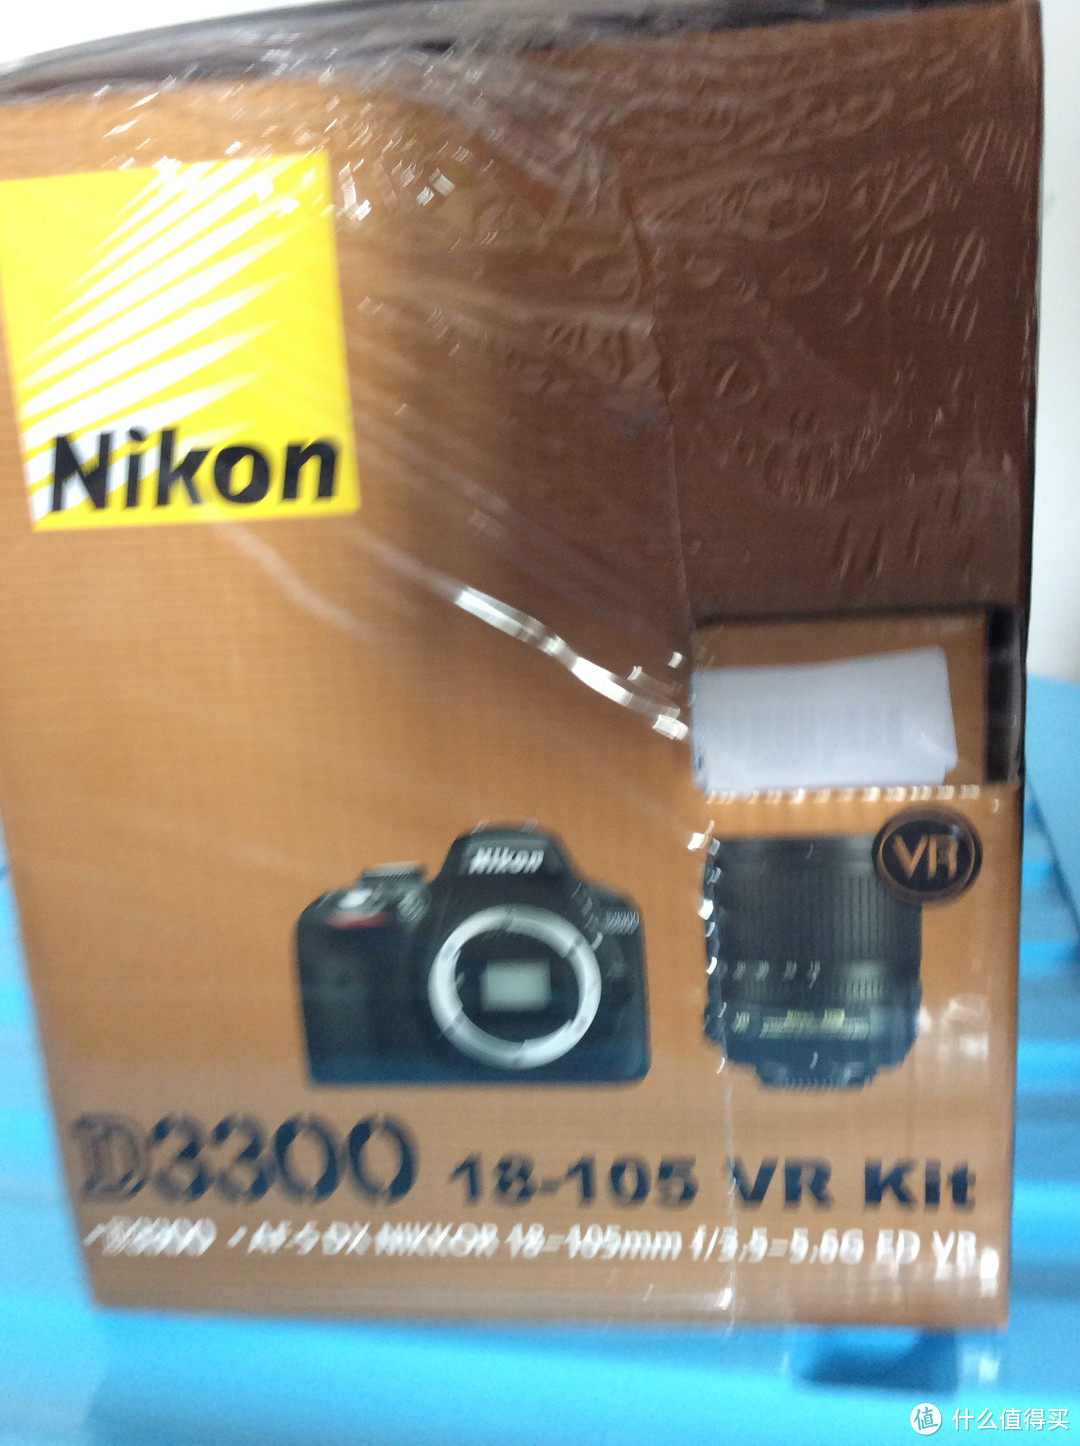 五一出游学摄影-入手 Nikon 尼康D3300 AF-S DX VR 18-105mm f/3.5-5.6G ED 单反套机